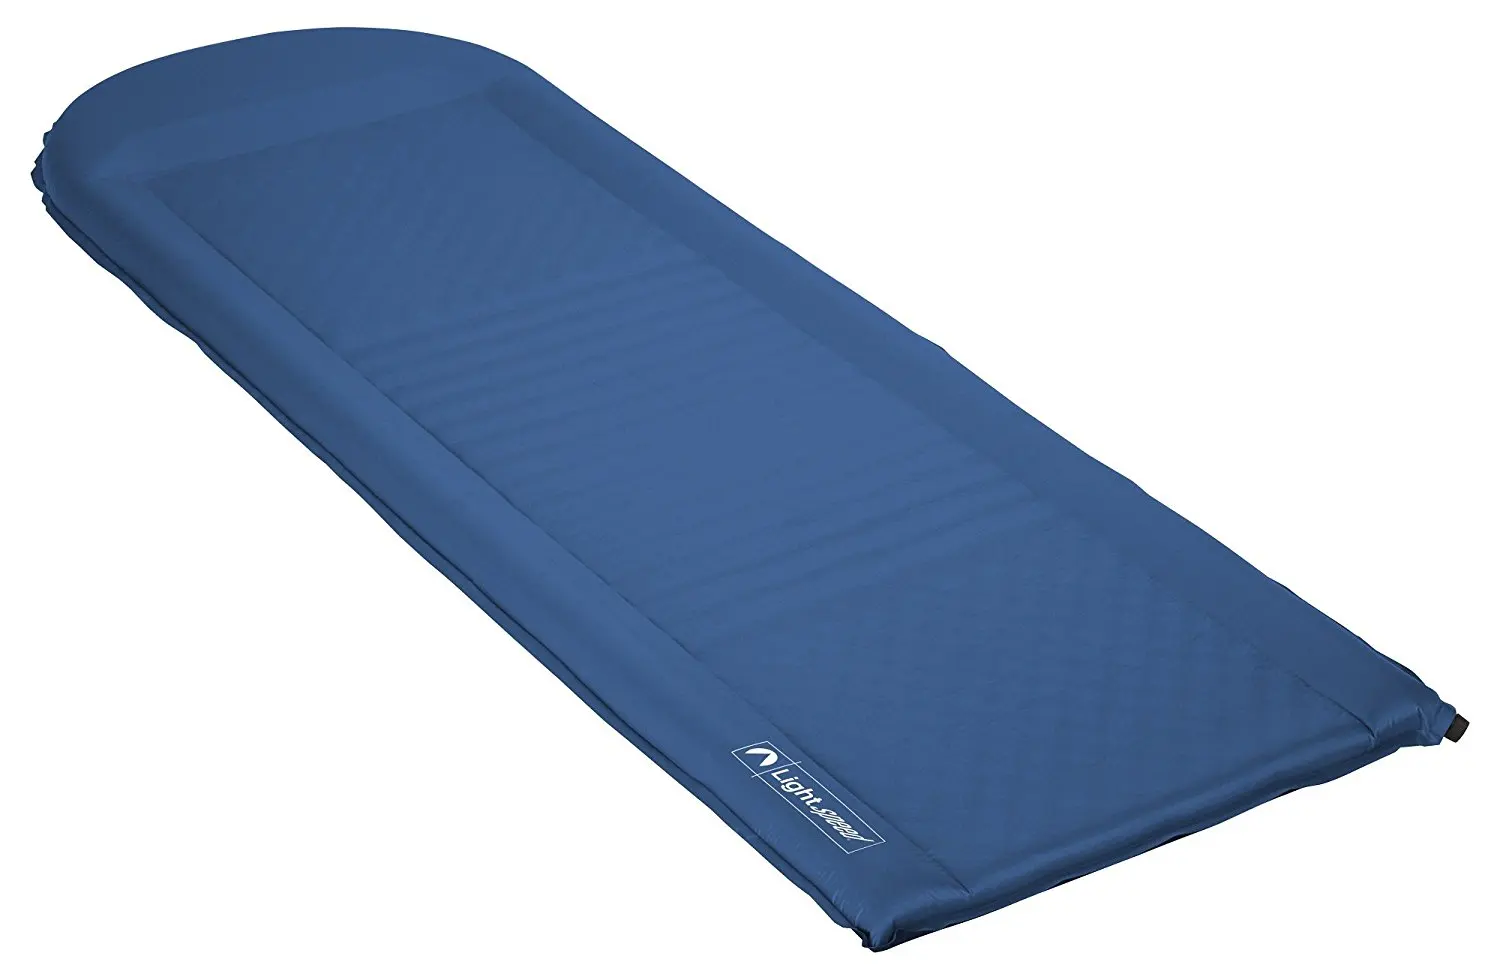 lightspeed outdoors self inflating sleep pad